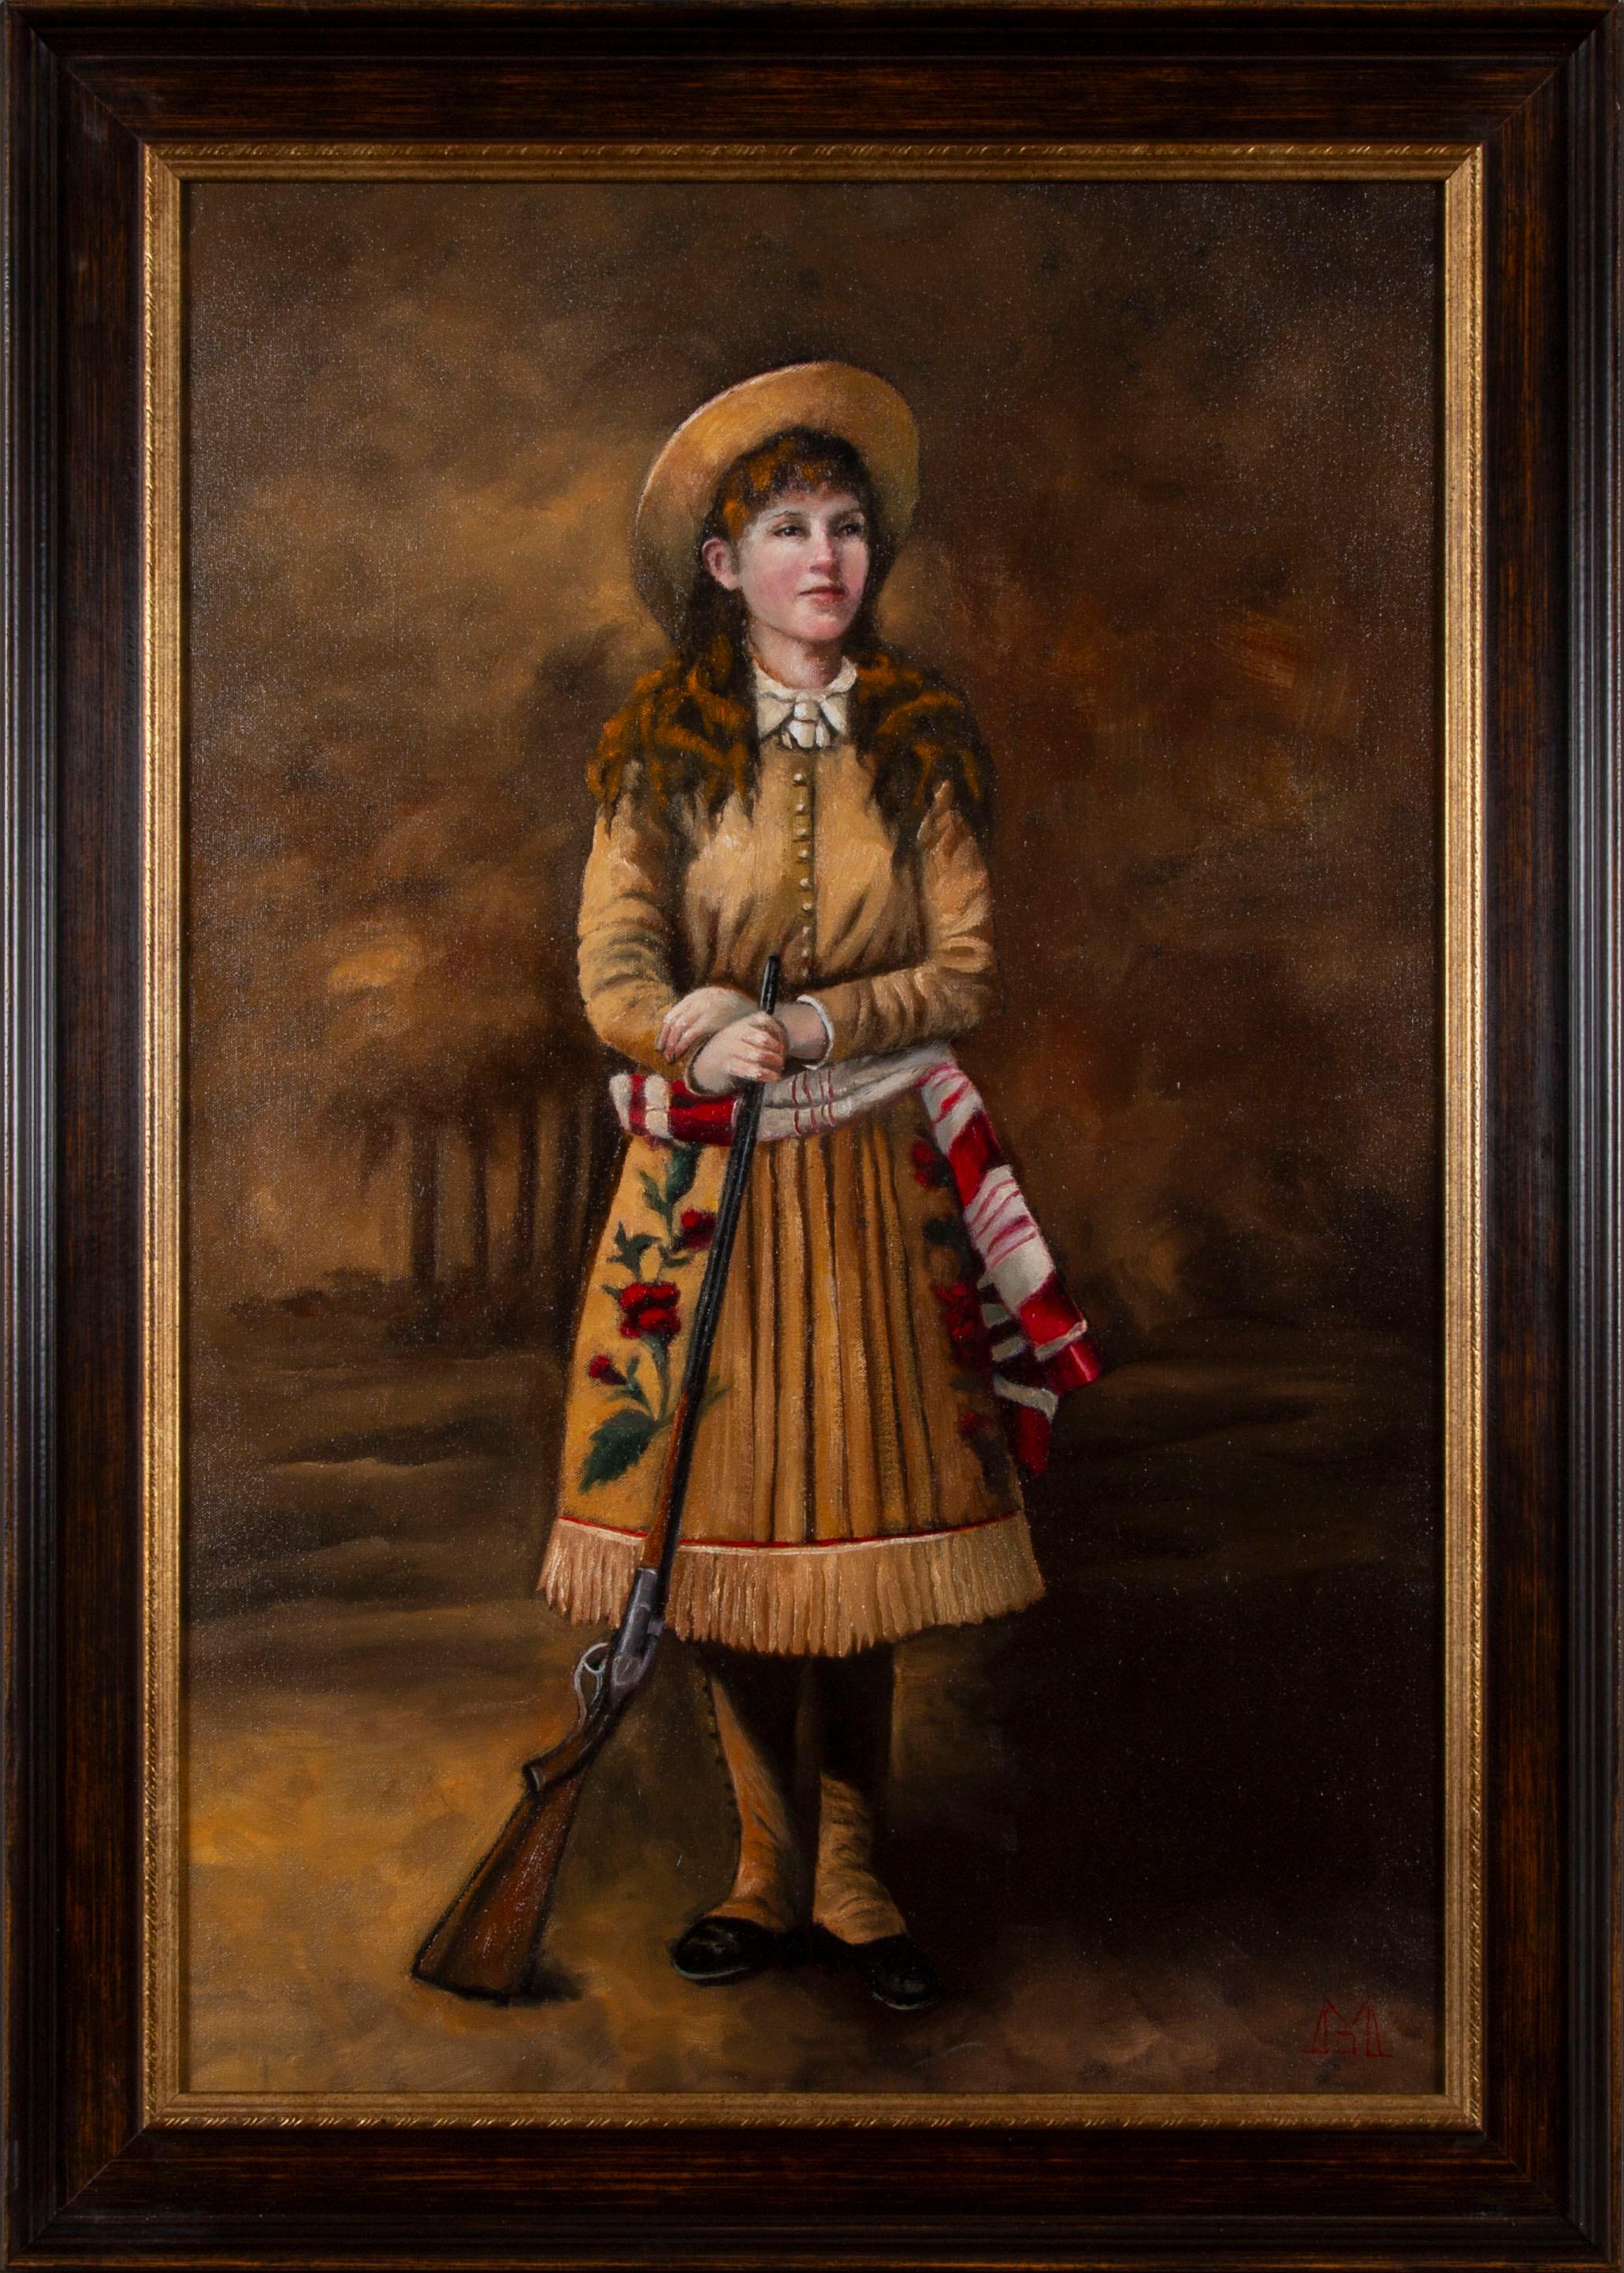 "Annie Gets Her Gun" von Deborah McKenna, original Öl auf Leinwand, 30" x 20", 35" x 25" in einem Massivholzrahmen.

Annie Oakley (geboren als Phoebe Ann Mosey; 13. August 1860 - 3. November 1926) war eine amerikanische Scharfschützin, die in